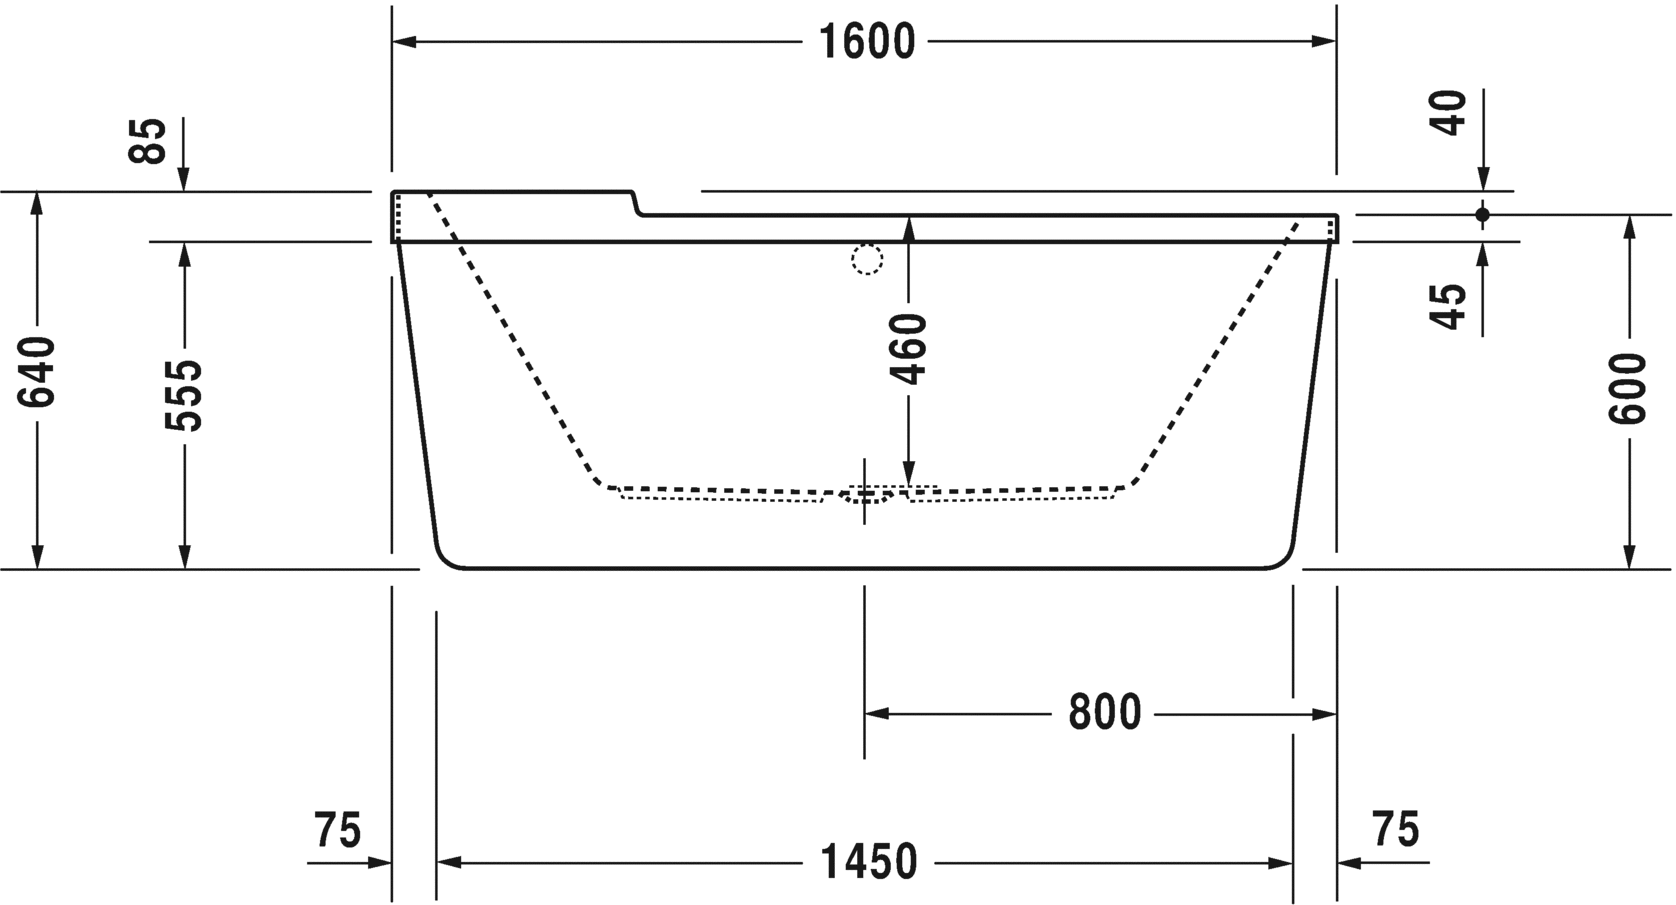 Акриловая ванна Duravit Starck 700409000000000 1600 мм х 800 мм, c двумя наклонами для спины, с акриловой панелью и ножками, отдельно стоящая, белая